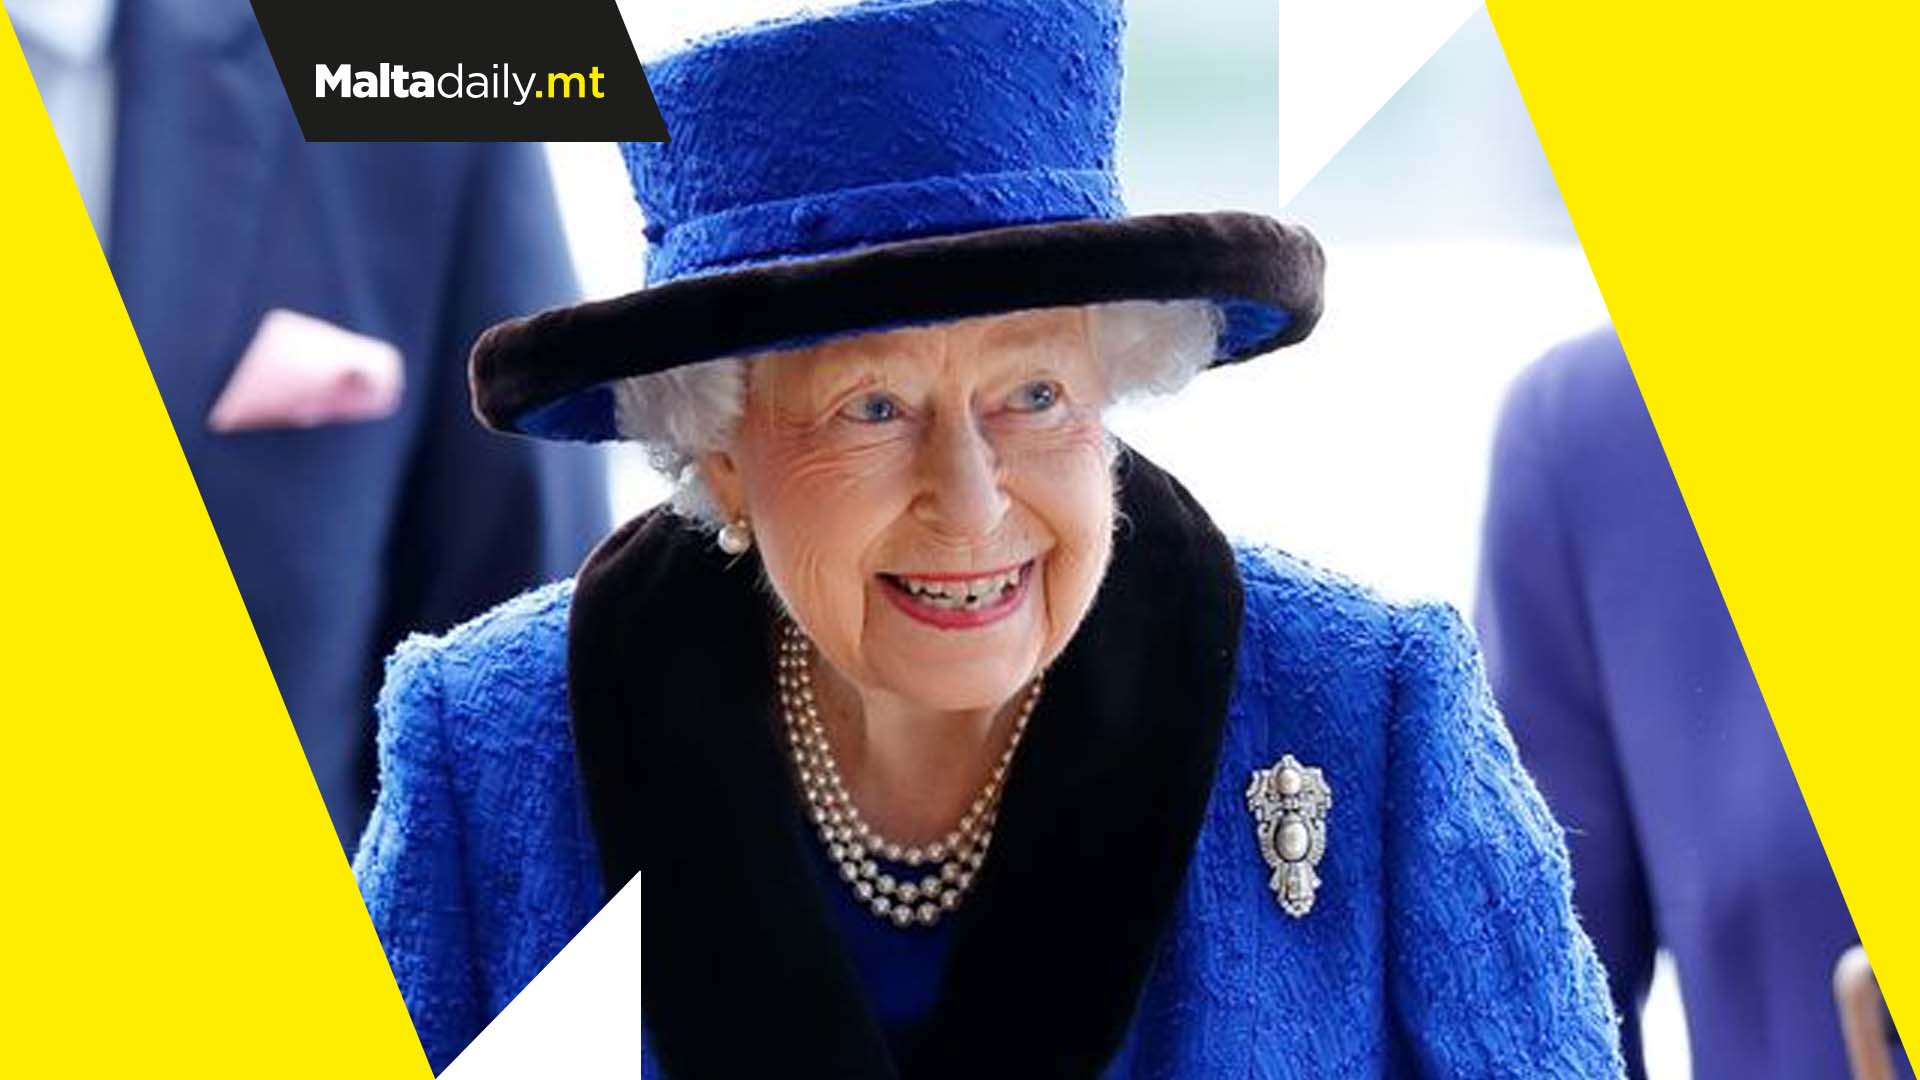 70 years of Queen Elizabeth II’s reign celebrated